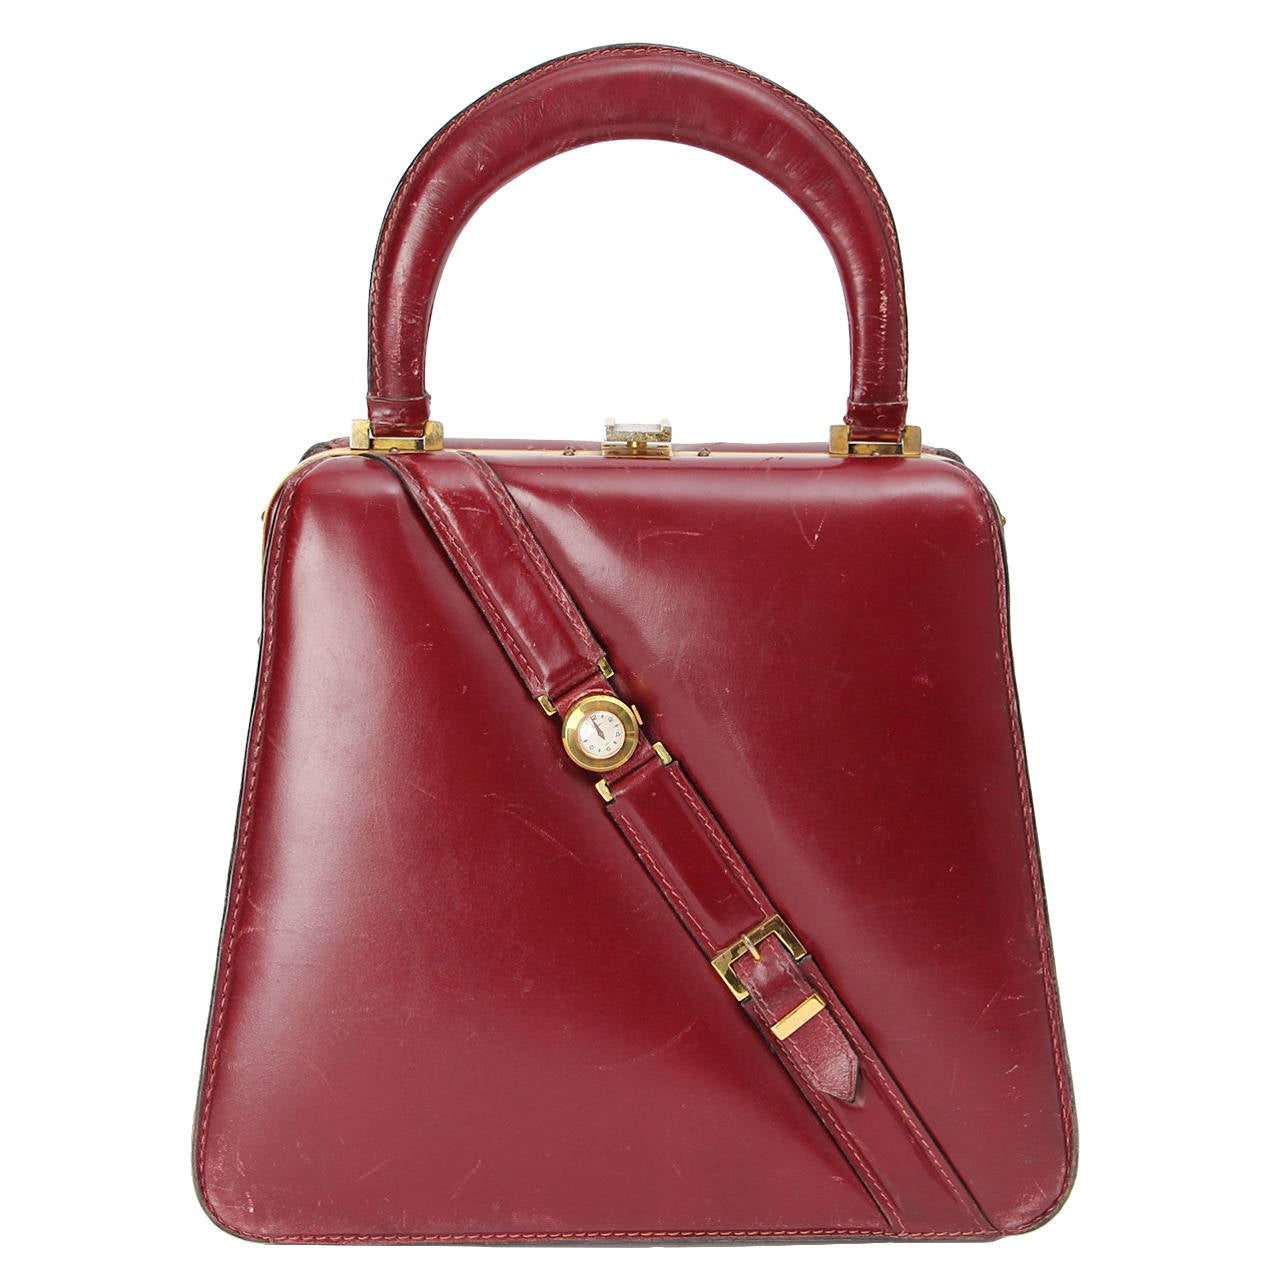 FERNANDE DESGRANGES 1950's Bordeaux Red Leather Purse Bag Made In